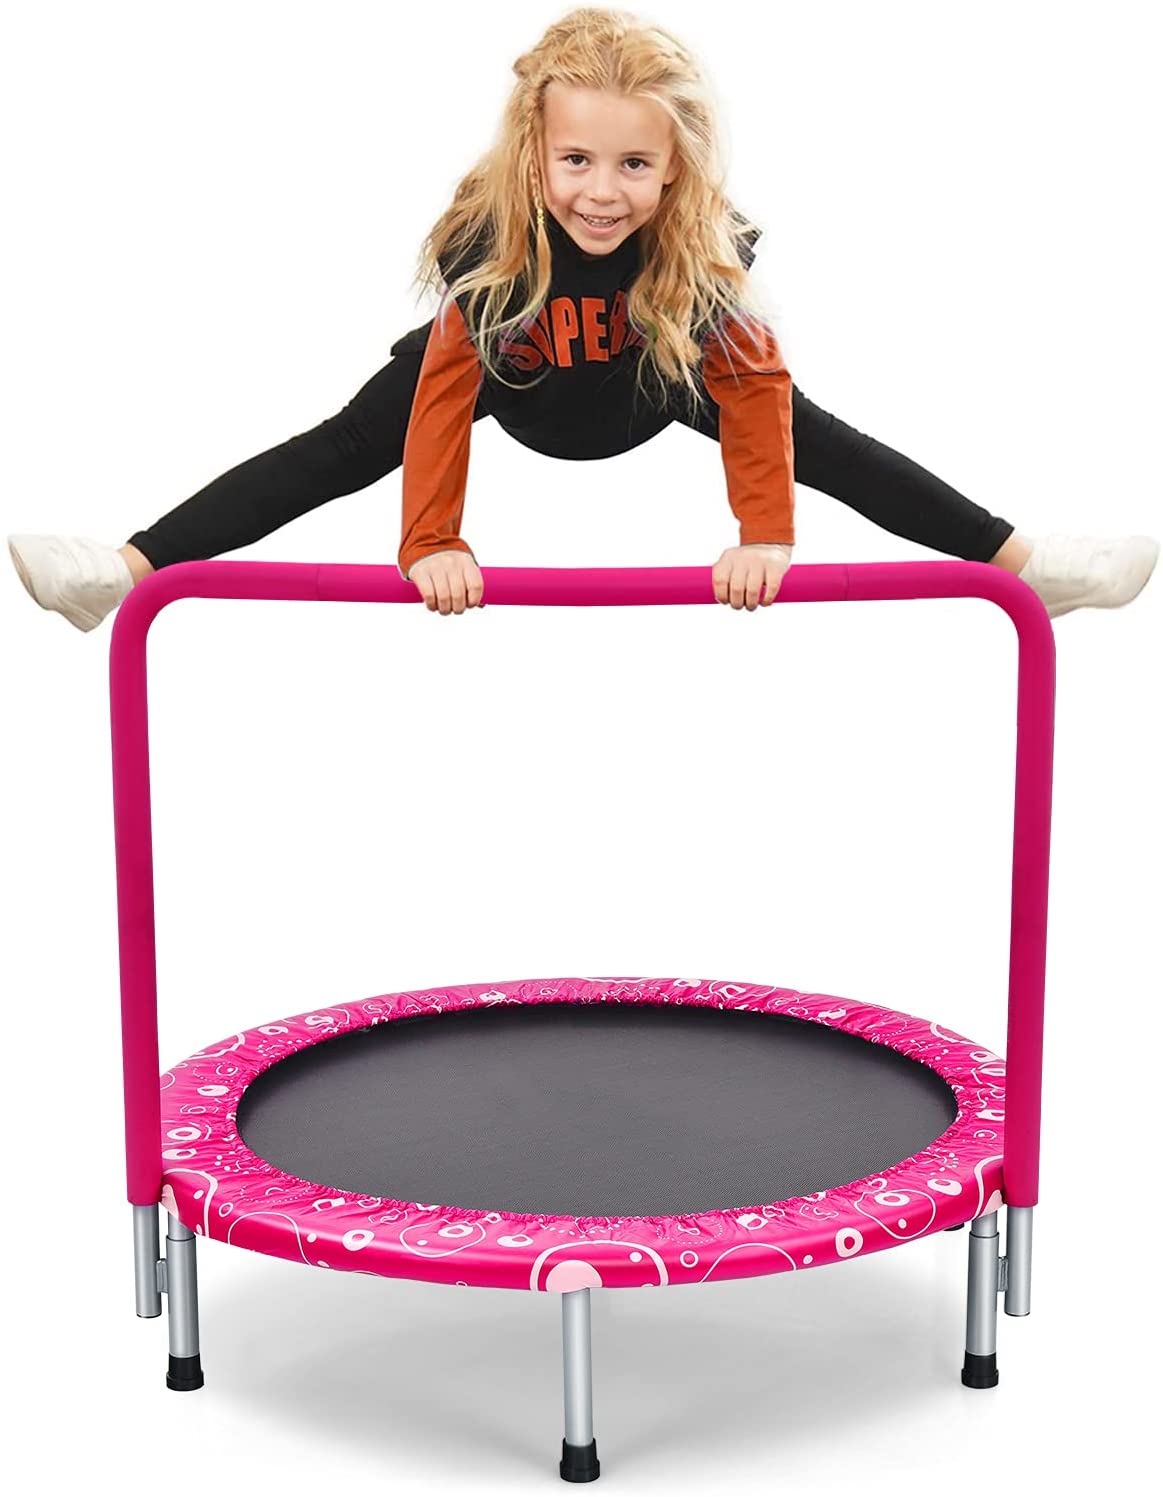 COSTWAY φ92cm Mini trampolína, skladacia fitness trampolína, detská trampolína do 150 kg, záhradná trampolína, vnútorná a vonkajšia trampolína